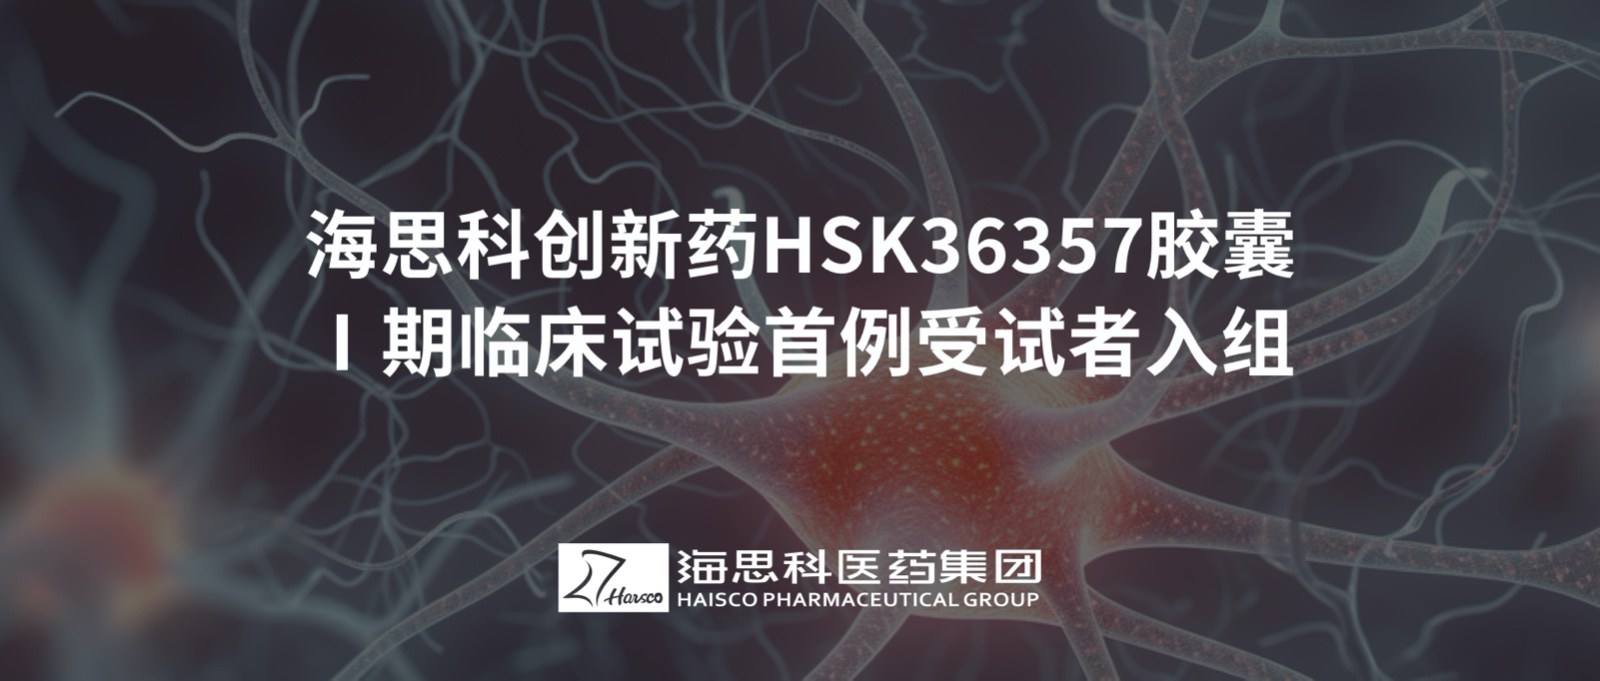 金沙贵宾3777线路检测中心创新药HSK36357胶囊Ⅰ期临床试验首例受试者入组